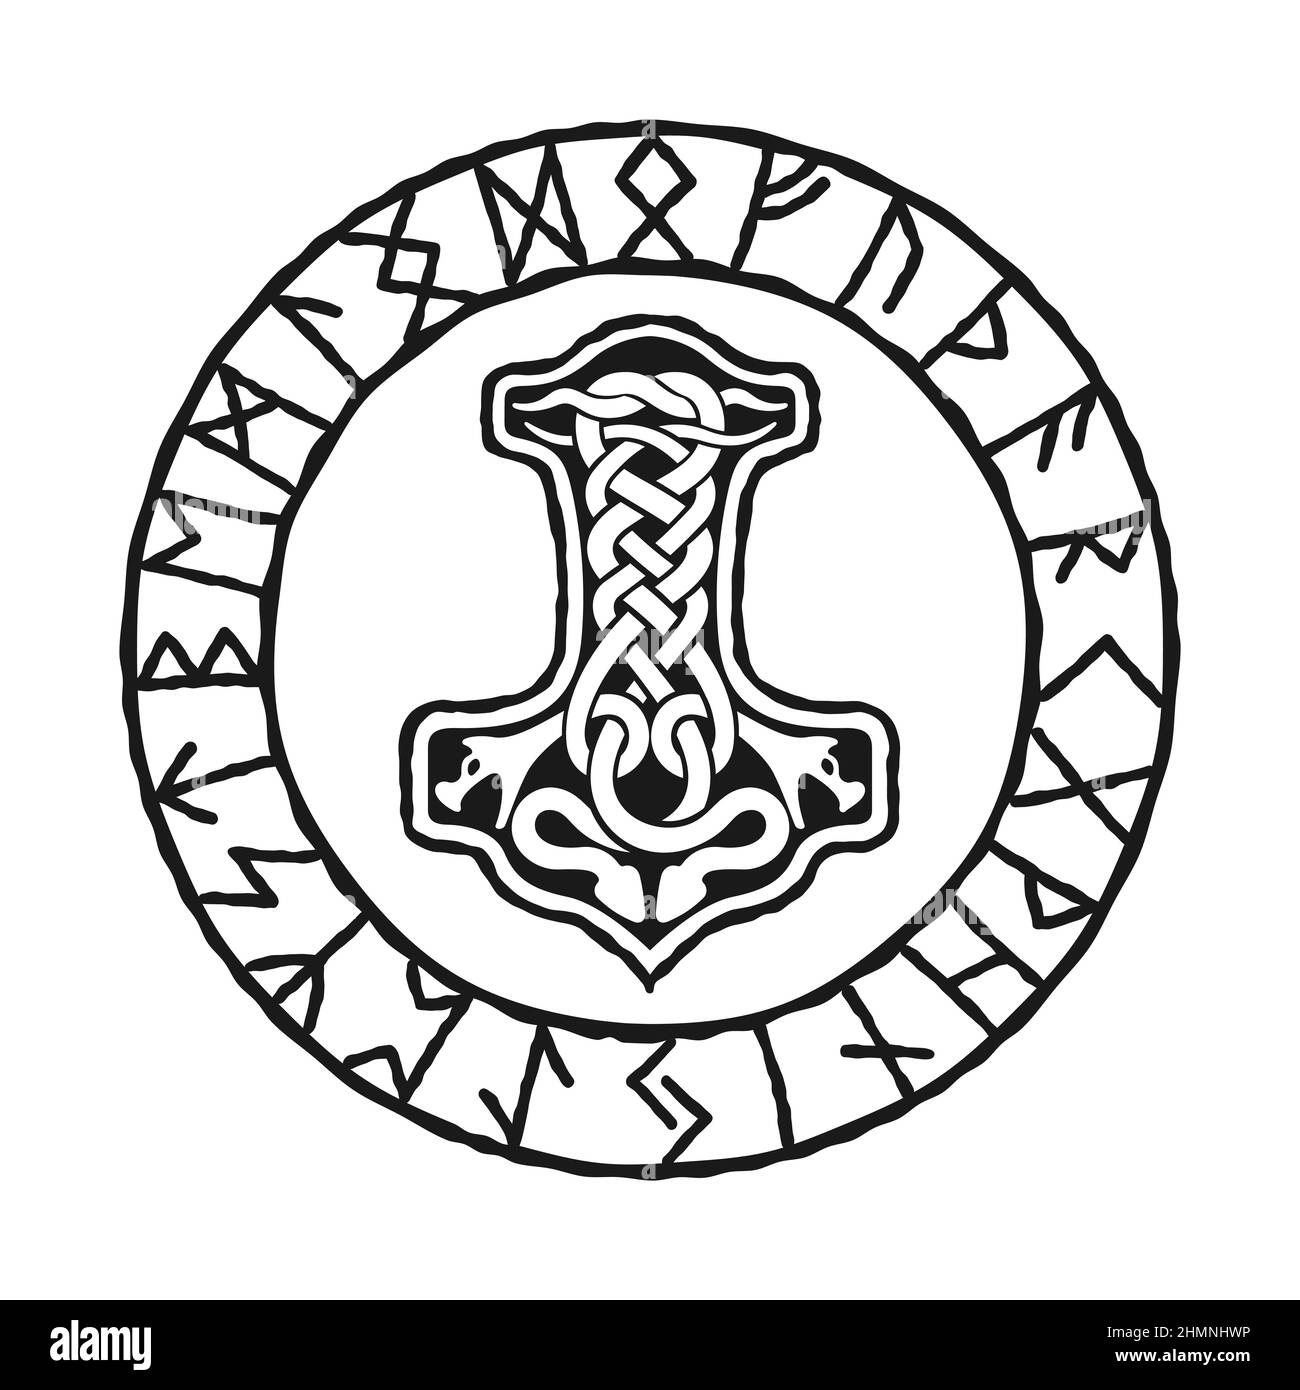 Mjolnir - Thors Hammer, Zeichnung in keltischen Knoten Design, und nordische Runen Kreis, isoliert auf weiß, Vektor-Illustration. Wikinger-Stil, Design-Vorlage Stock Vektor